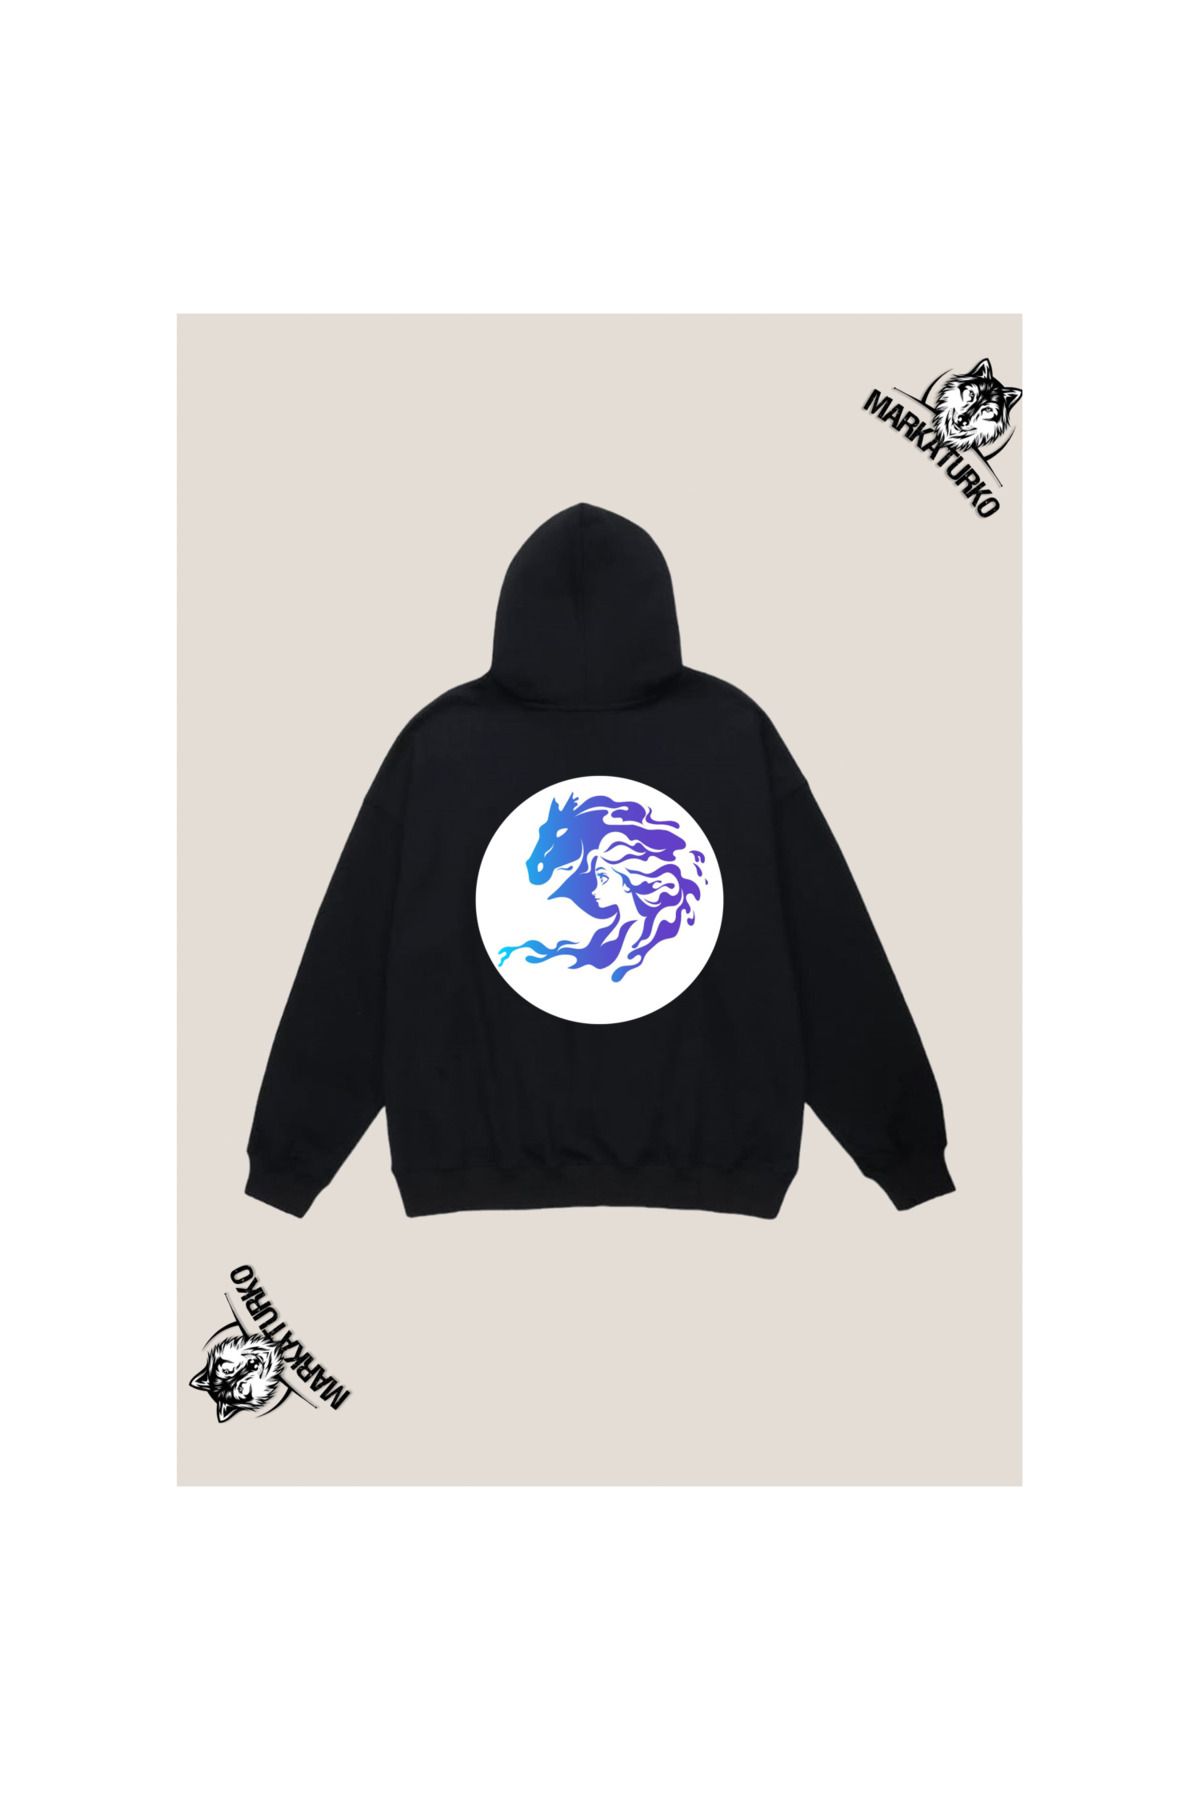 MarkaTurko Frozen Özel Tasarım Sırt Baskılı Siyah Kapşonlu Unisex Sweatshirt 2404-7